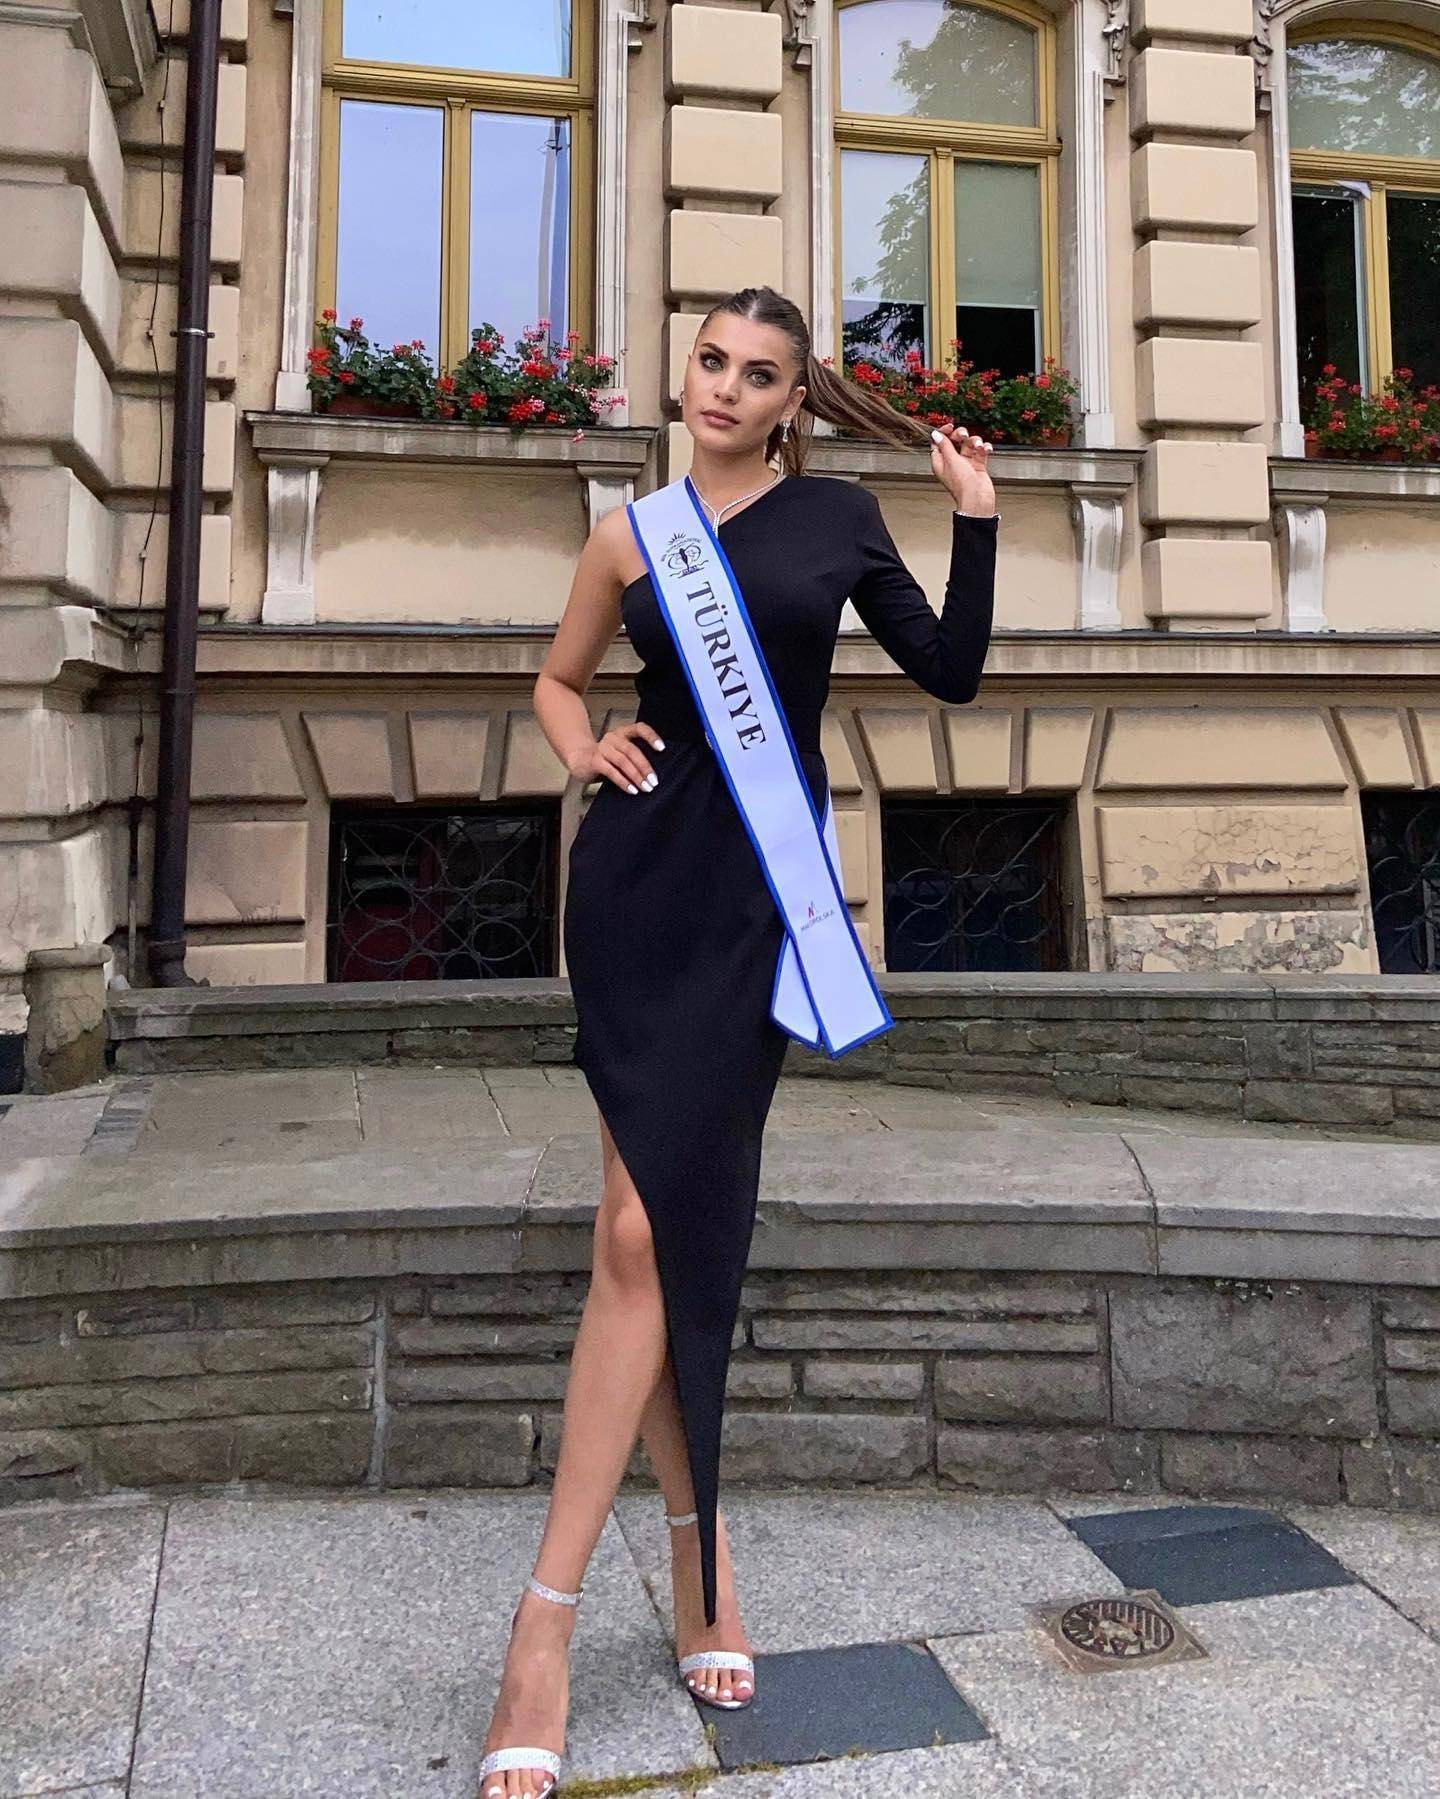 Nhanh sắc xinh đẹp của mỹ nhân giành giải Người đẹp Thanh lịch tại Hoa hậu siêu quốc gia 2022